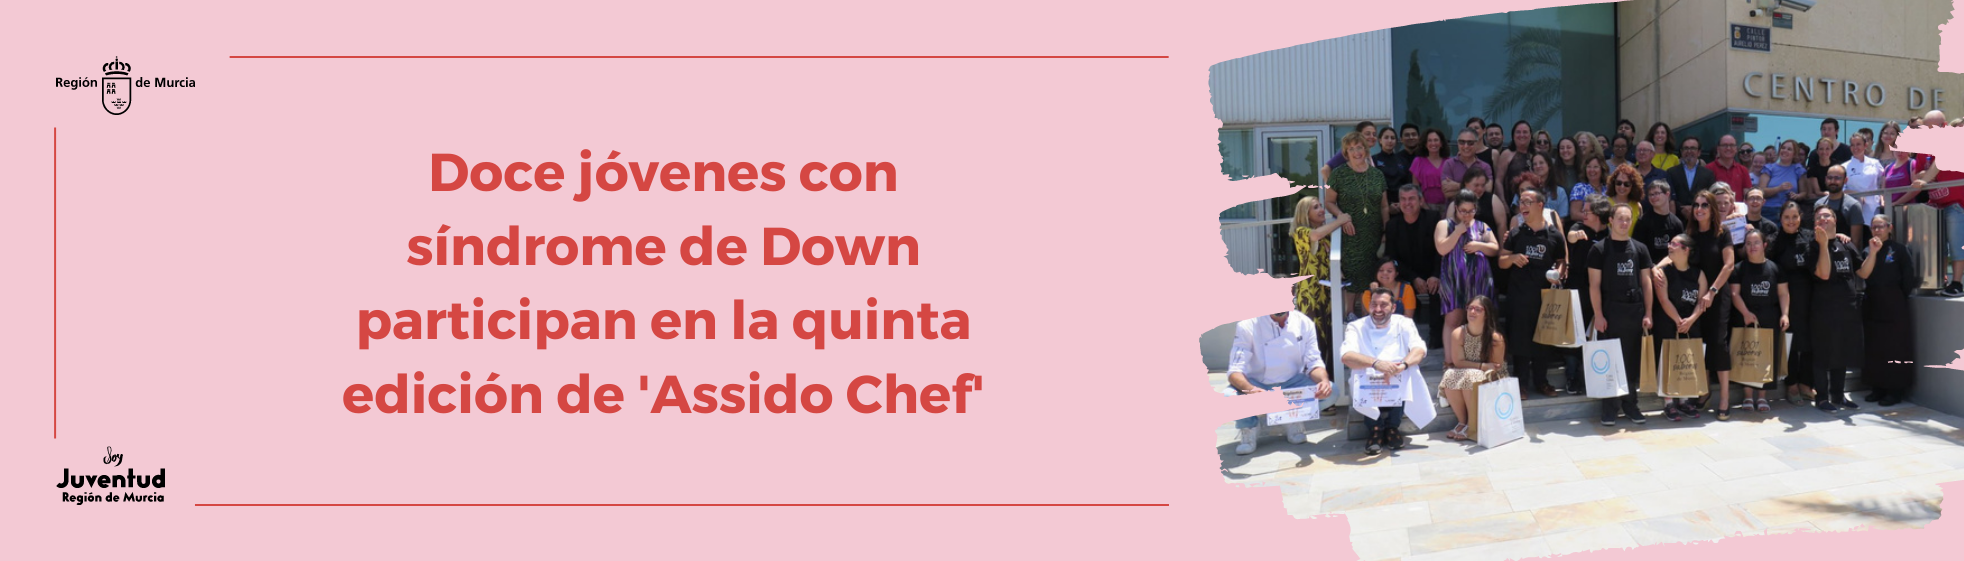 Doce jóvenes con síndrome de Down participan en la quinta edición de 'Assido Chef'